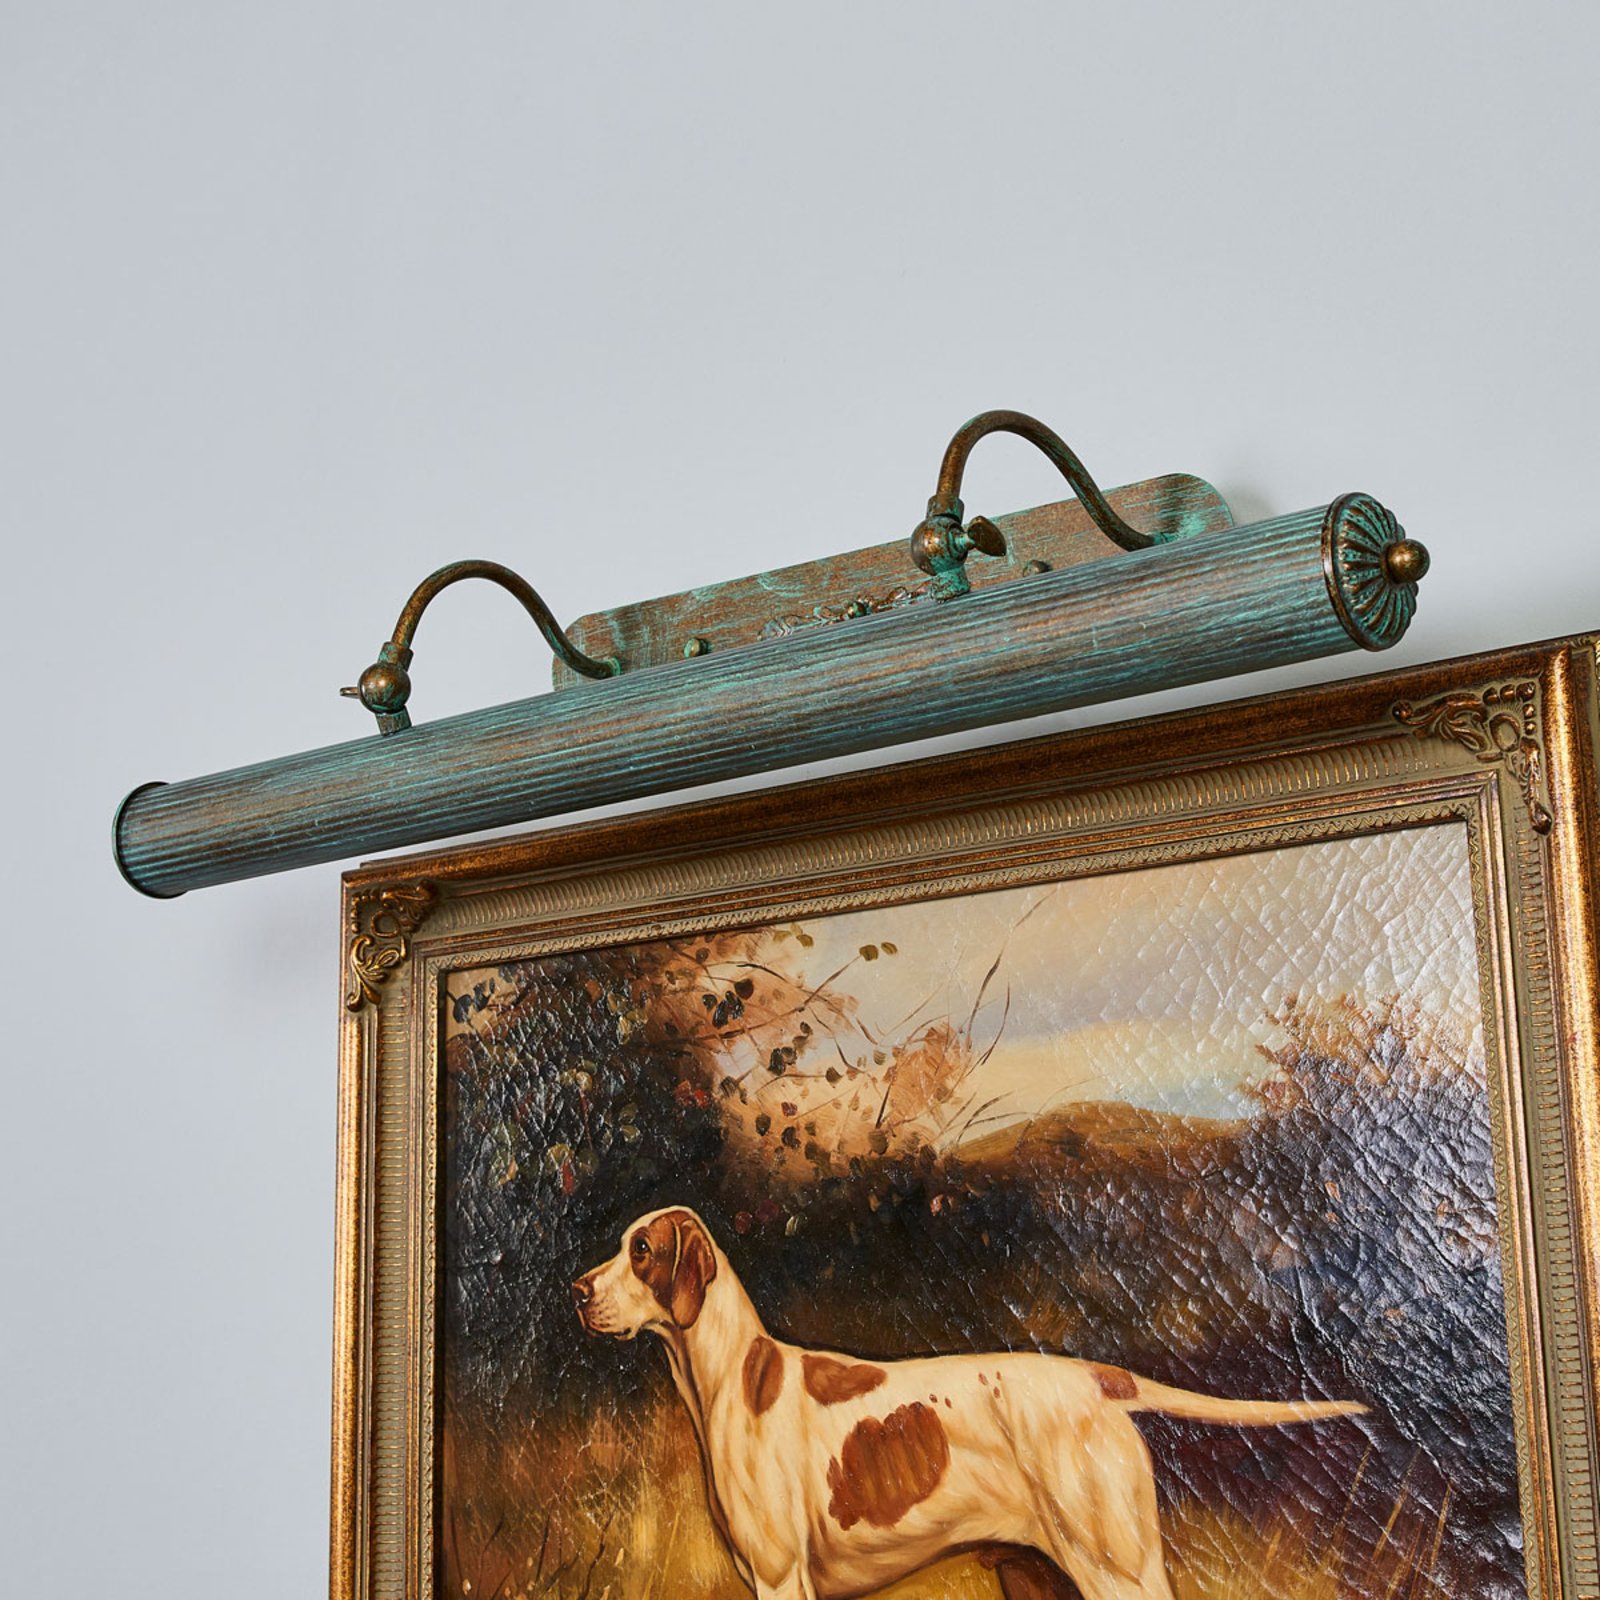 Beno patinás kinézetű képlámpa, 72 cm